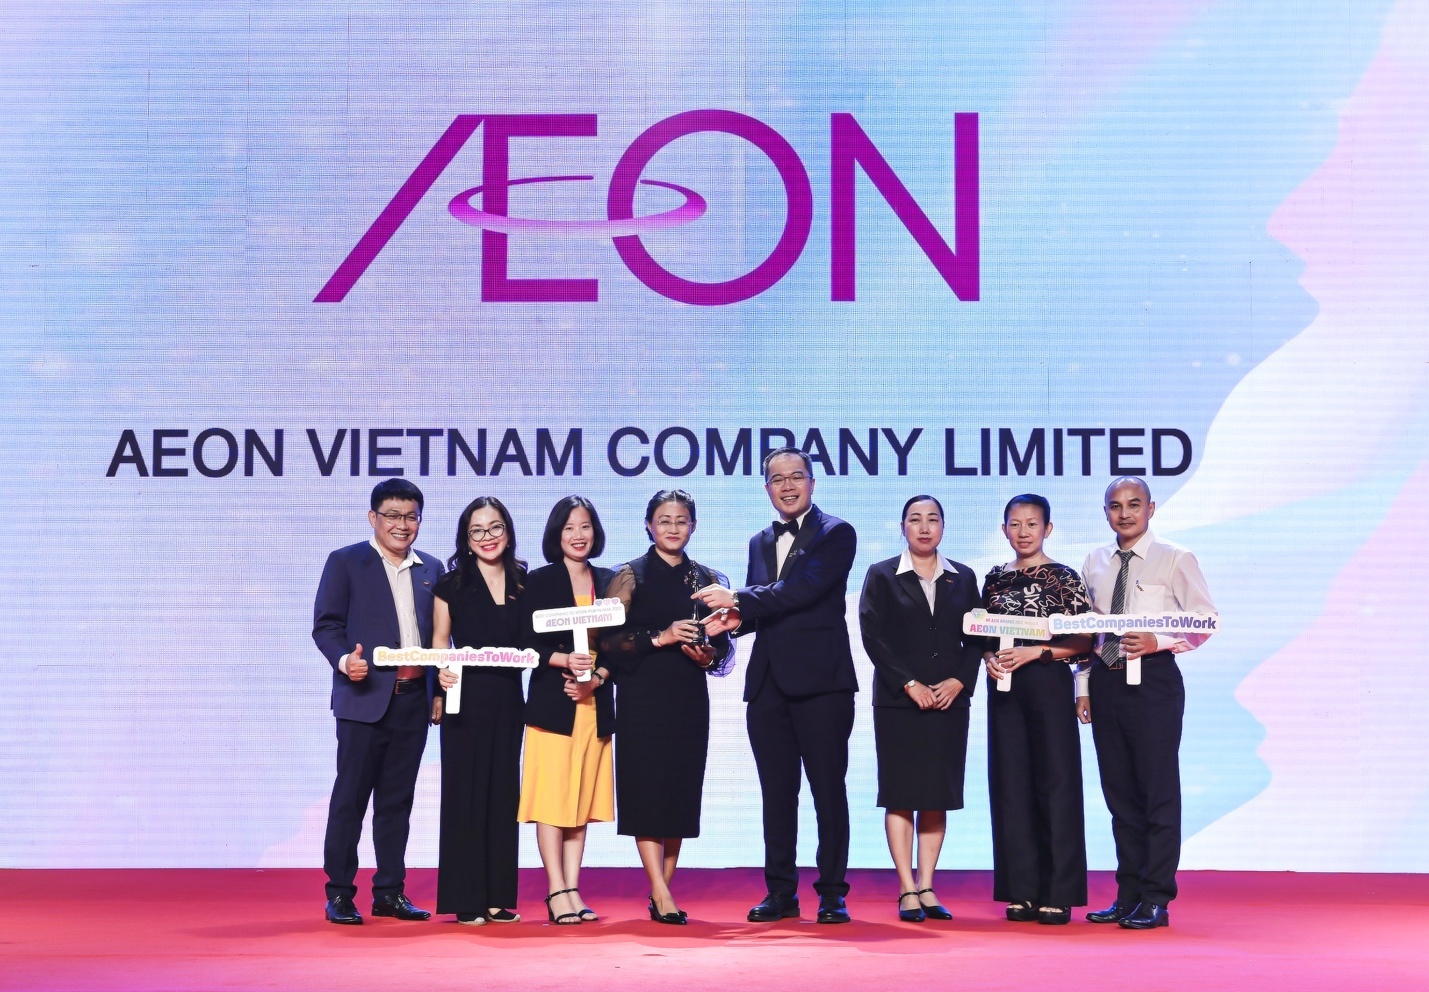 AEON Vietnam accompanying Vietnam’s sustainable development for over 10 years